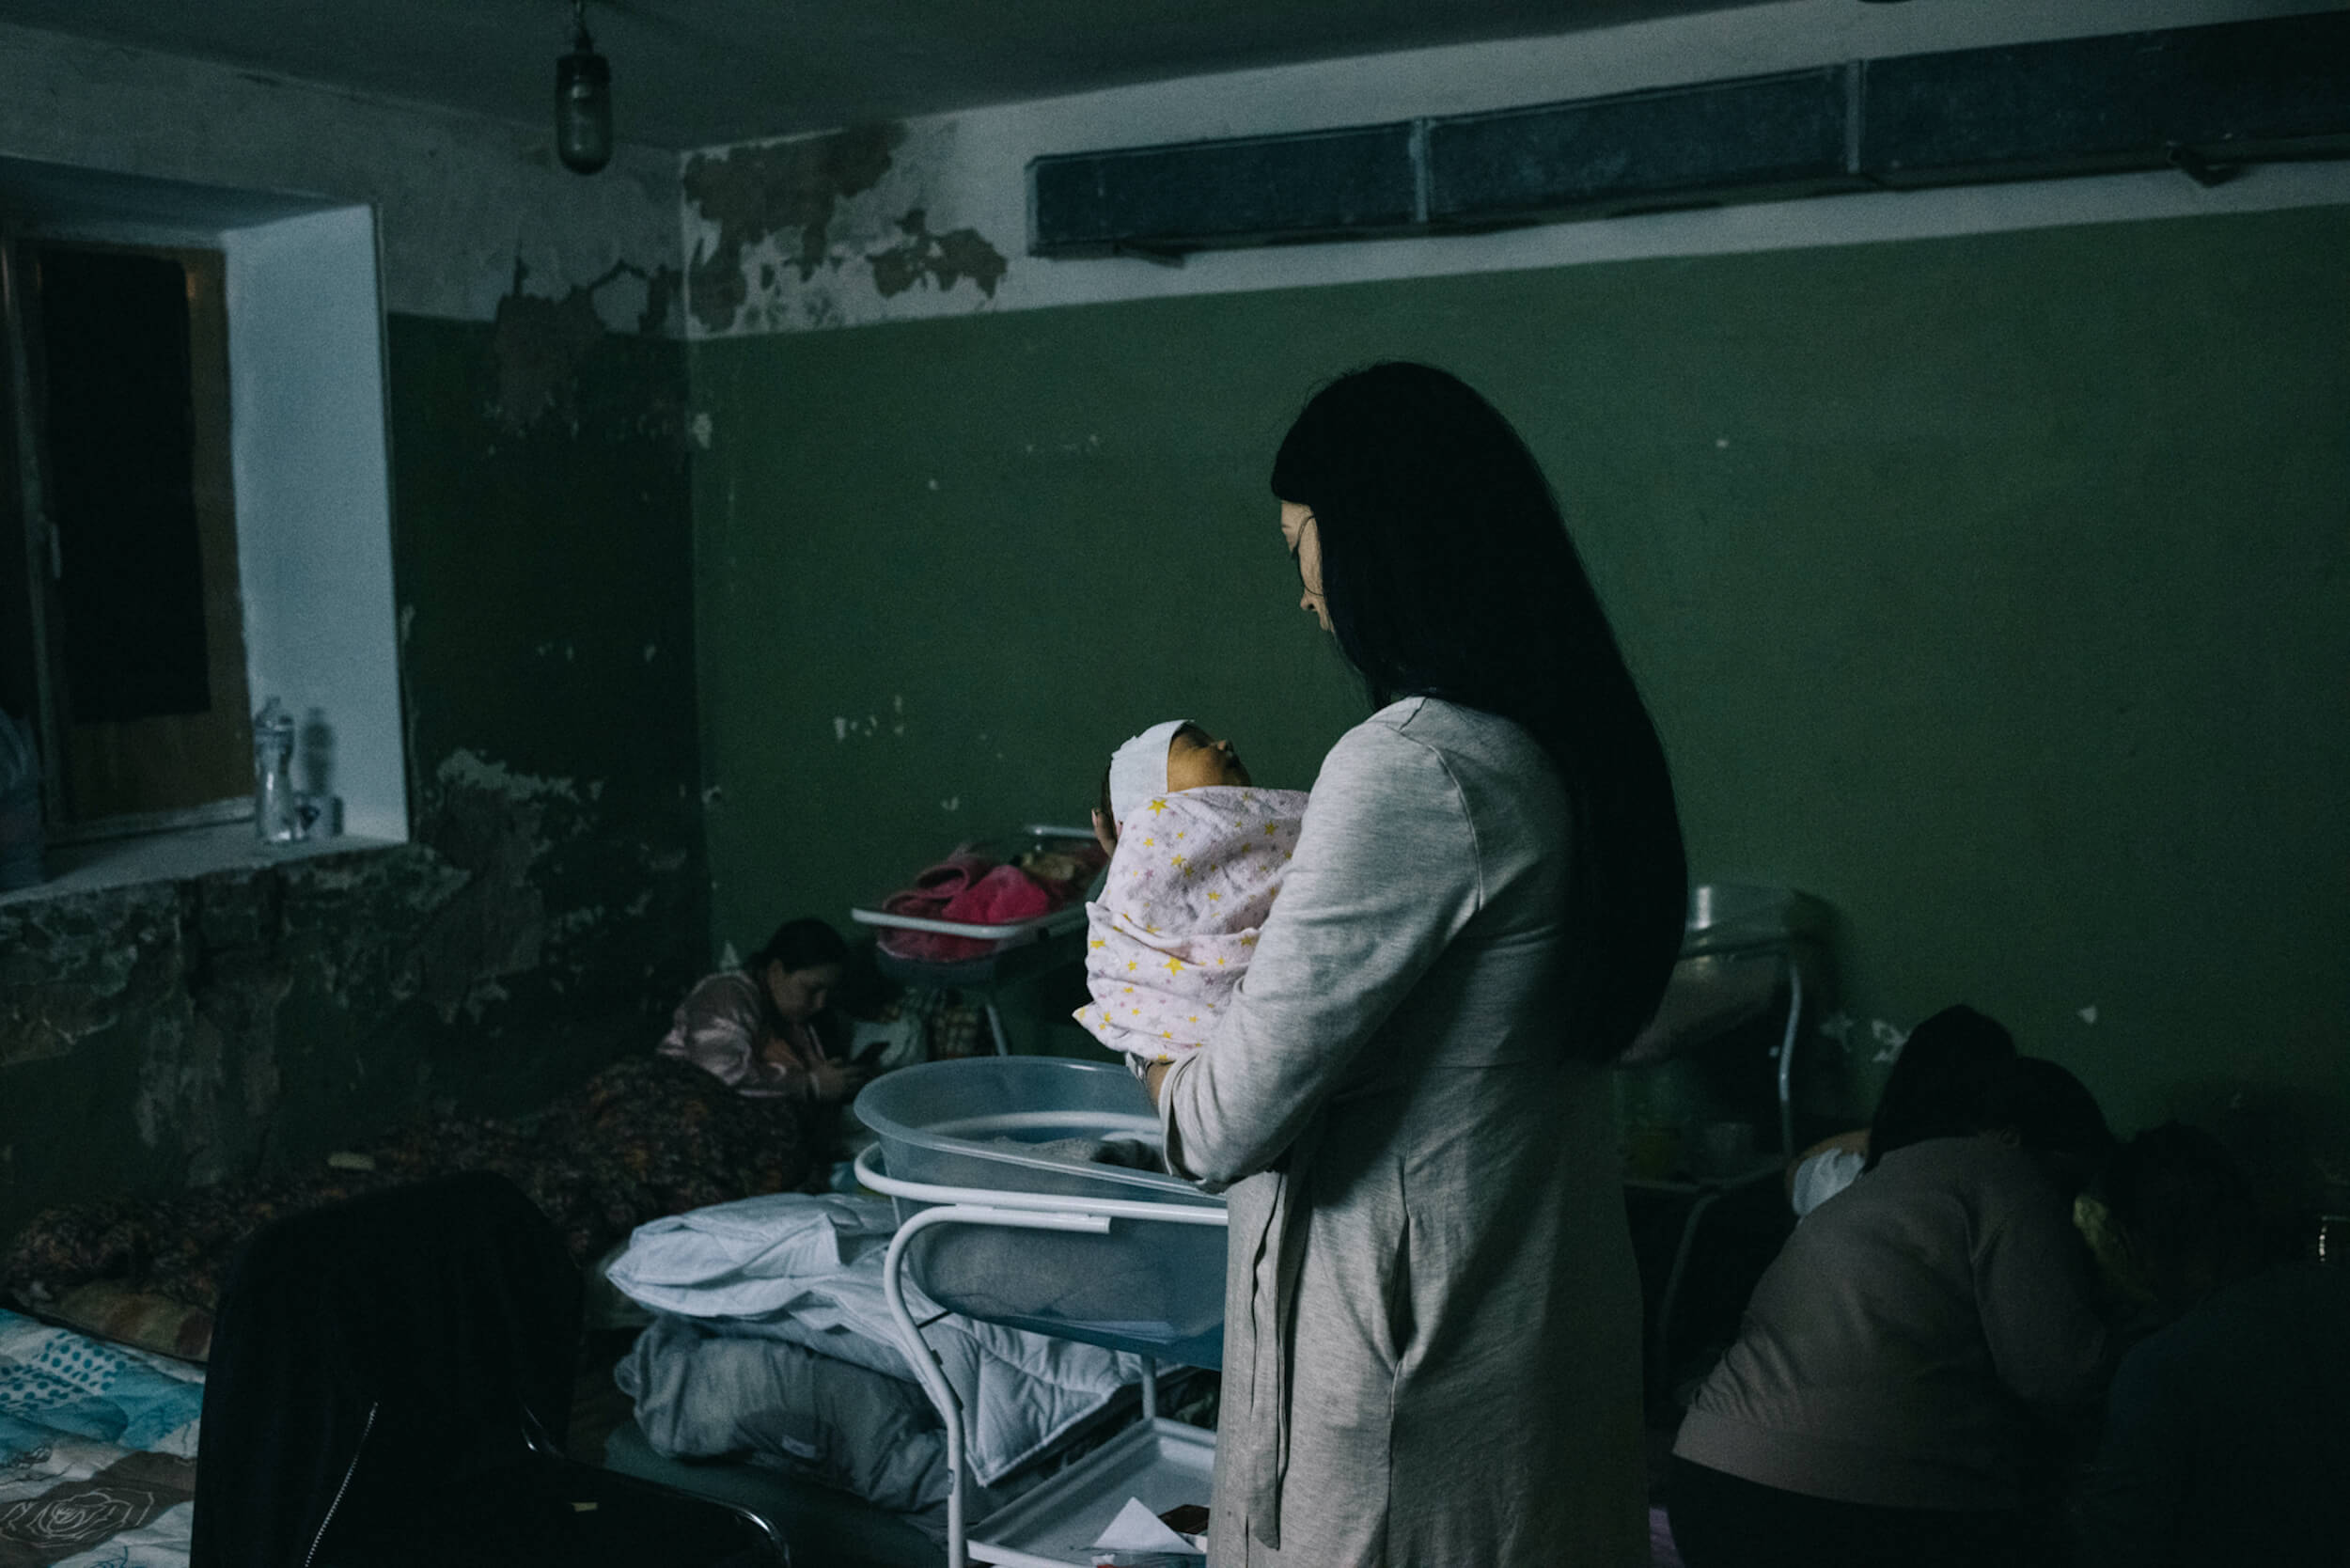 Київське пологове відділення повністю переїхало до підвалу лікарні після того, як було зруйновано сусідній будинок. Київ, 2 березня